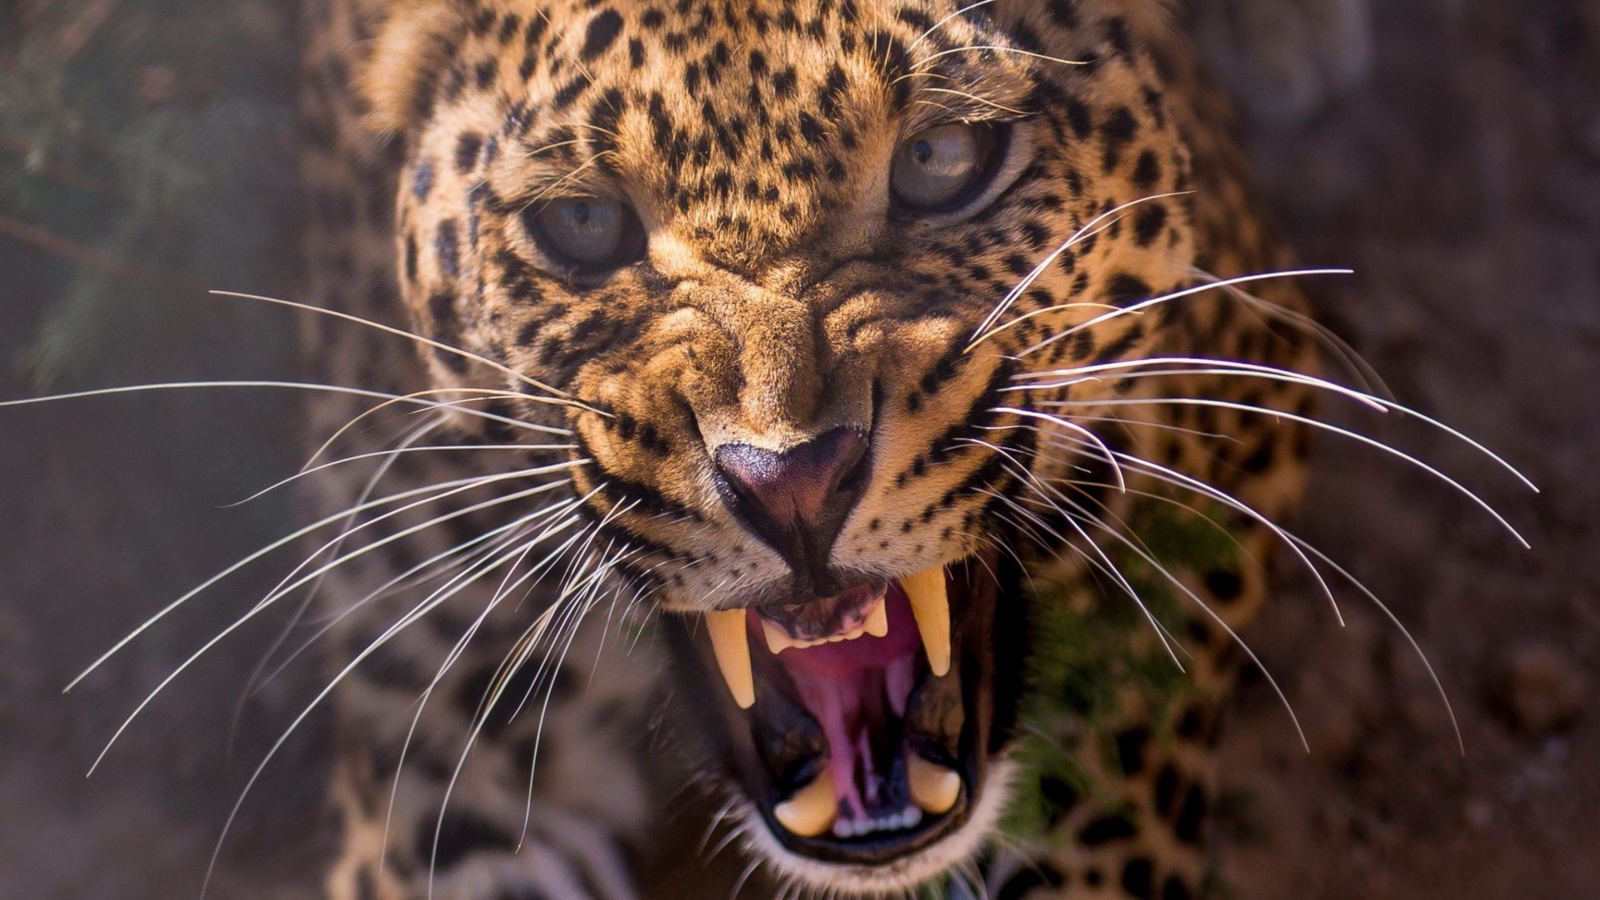 Leopard attack screenshot #1 1600x900